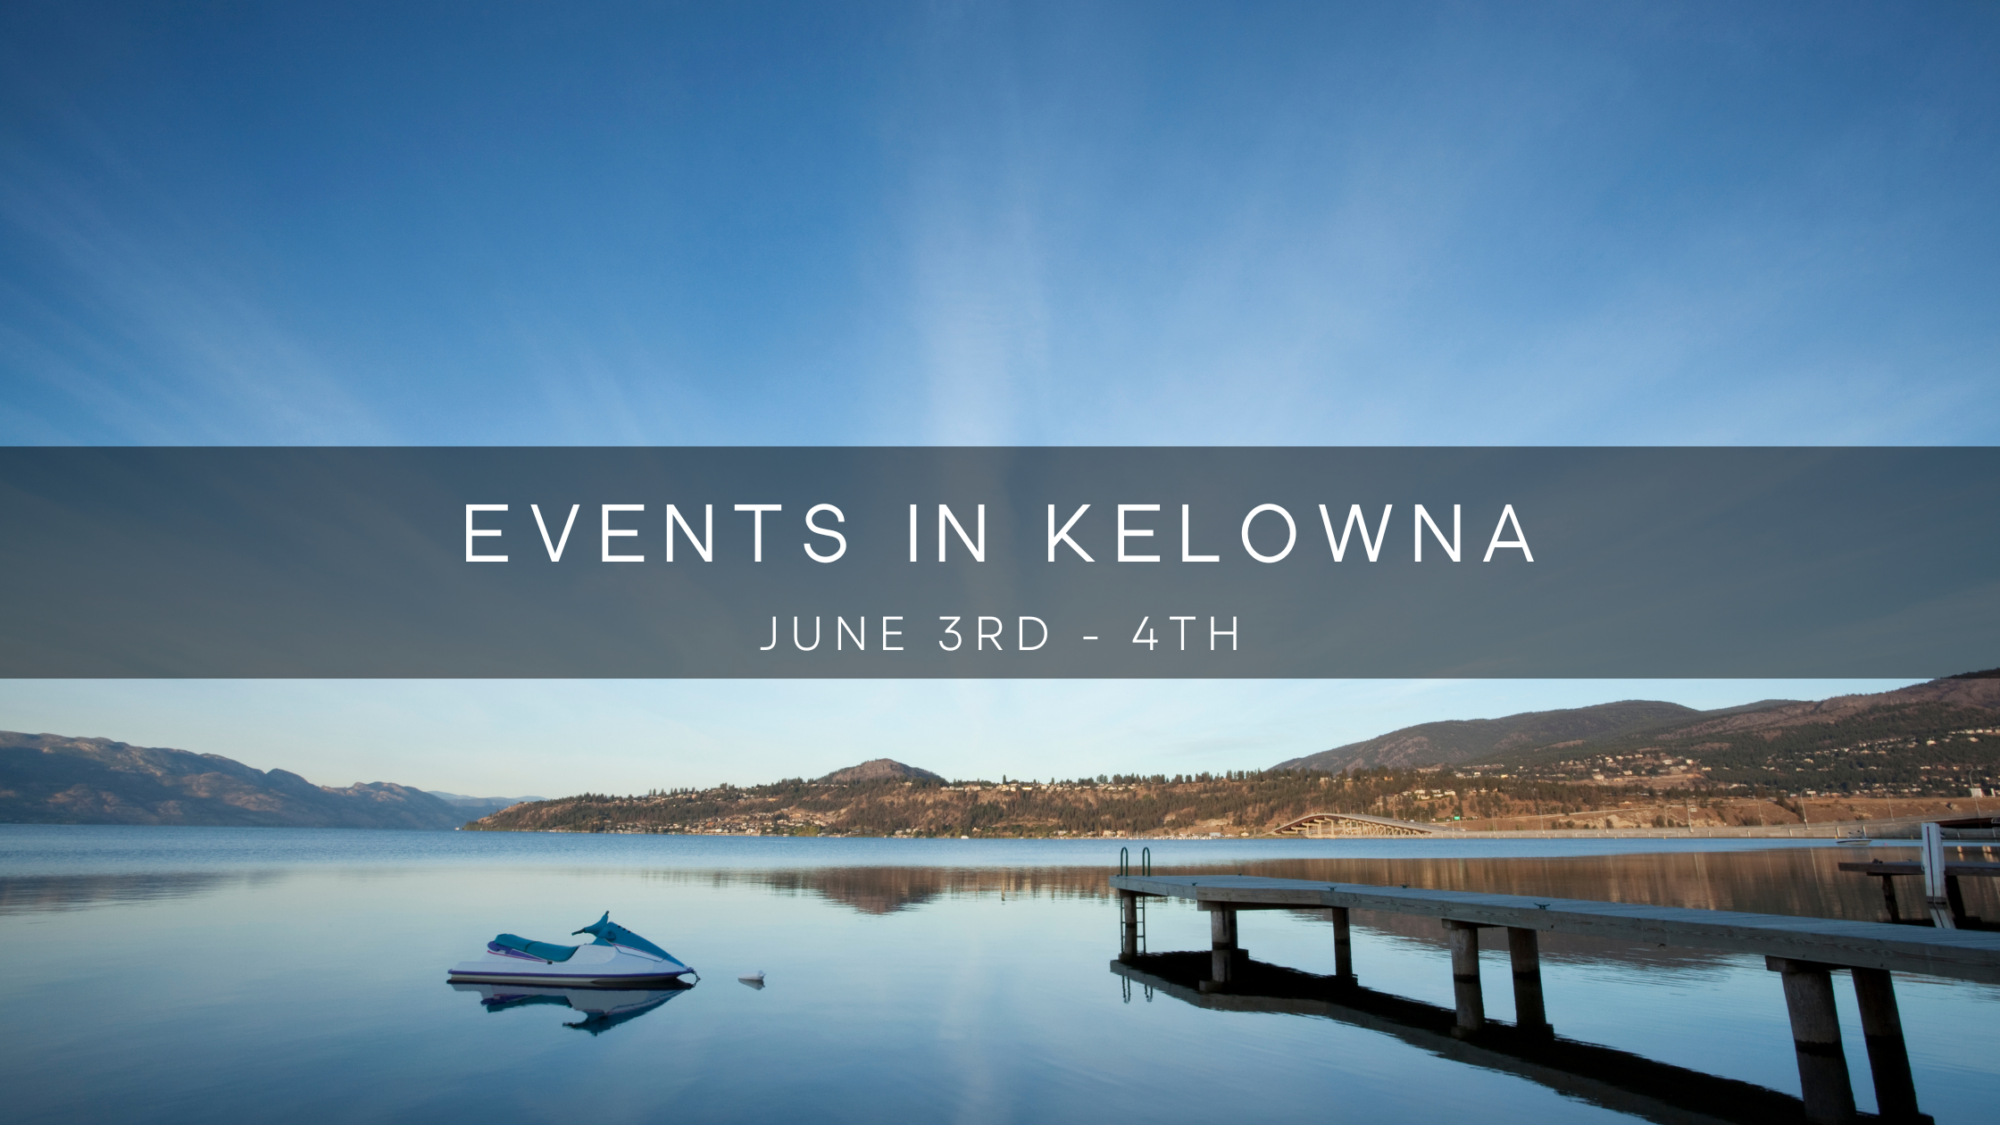 Events in kelowna this weekend